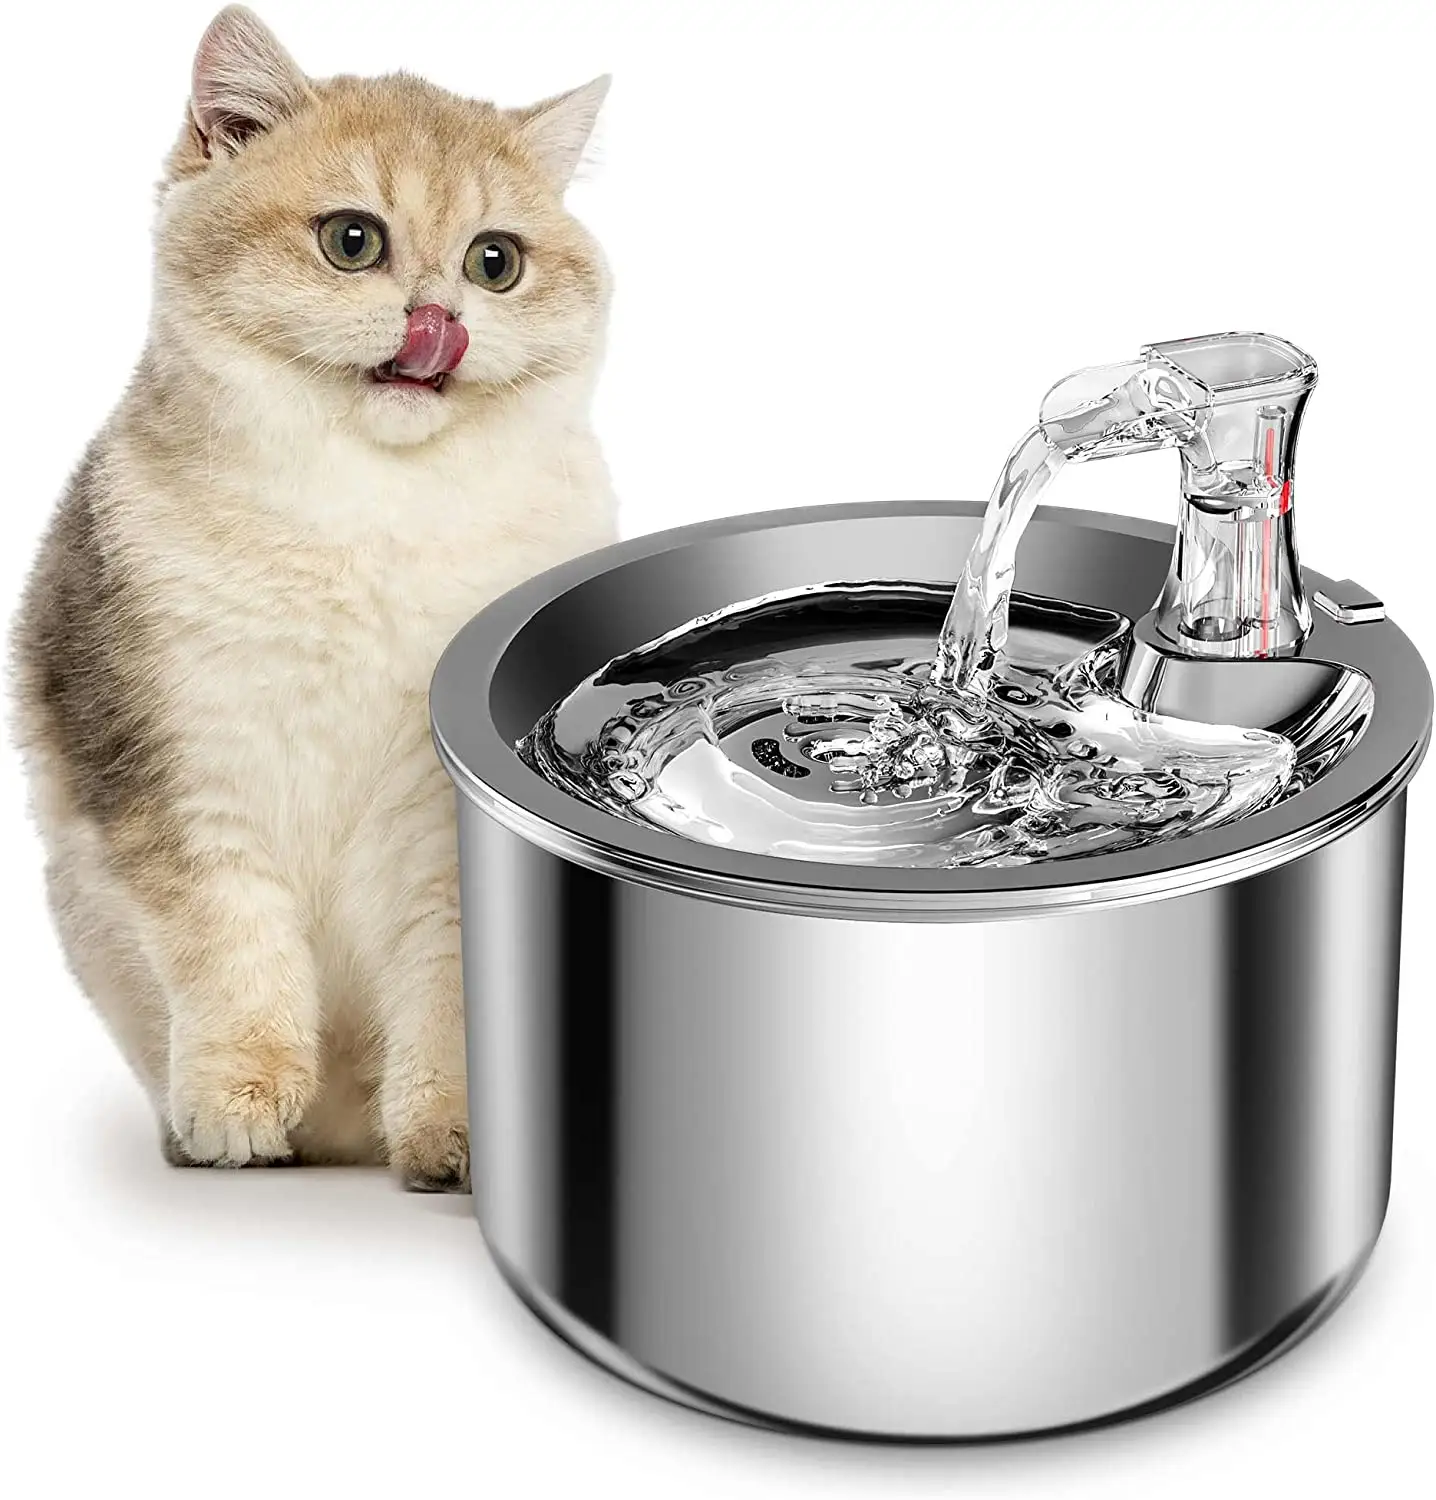 Hunde wasser brunnen 2L Smart Induction USB-Schnitts telle Mute Cat Waterer Fountain Geeignet für Katzen Hunde und Kleintiere